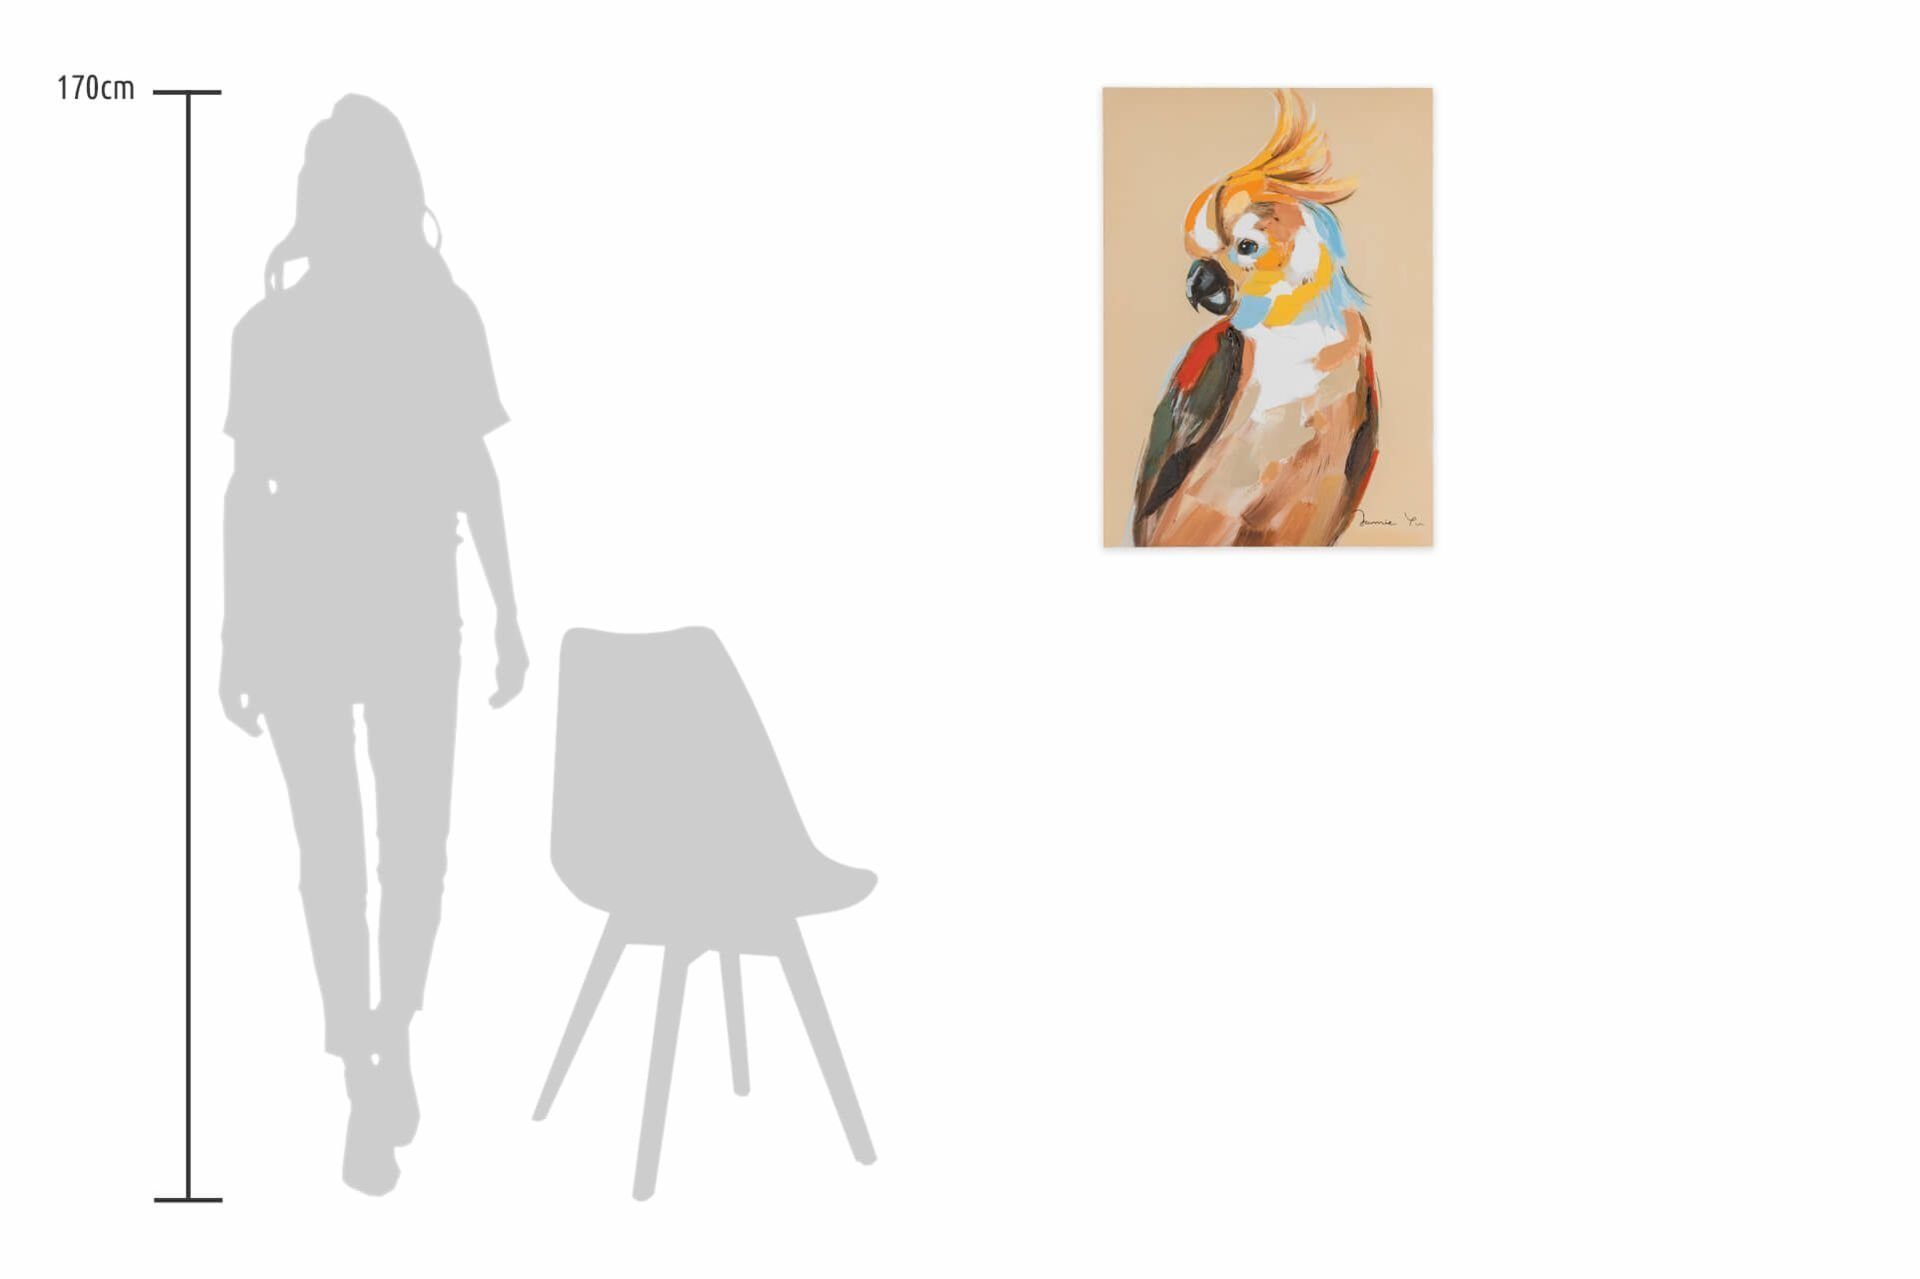 100% Wandbild 50x70 HANDGEMALT Wohnzimmer KUNSTLOFT Portrait Kakadus Leinwandbild Gemälde cm, eines